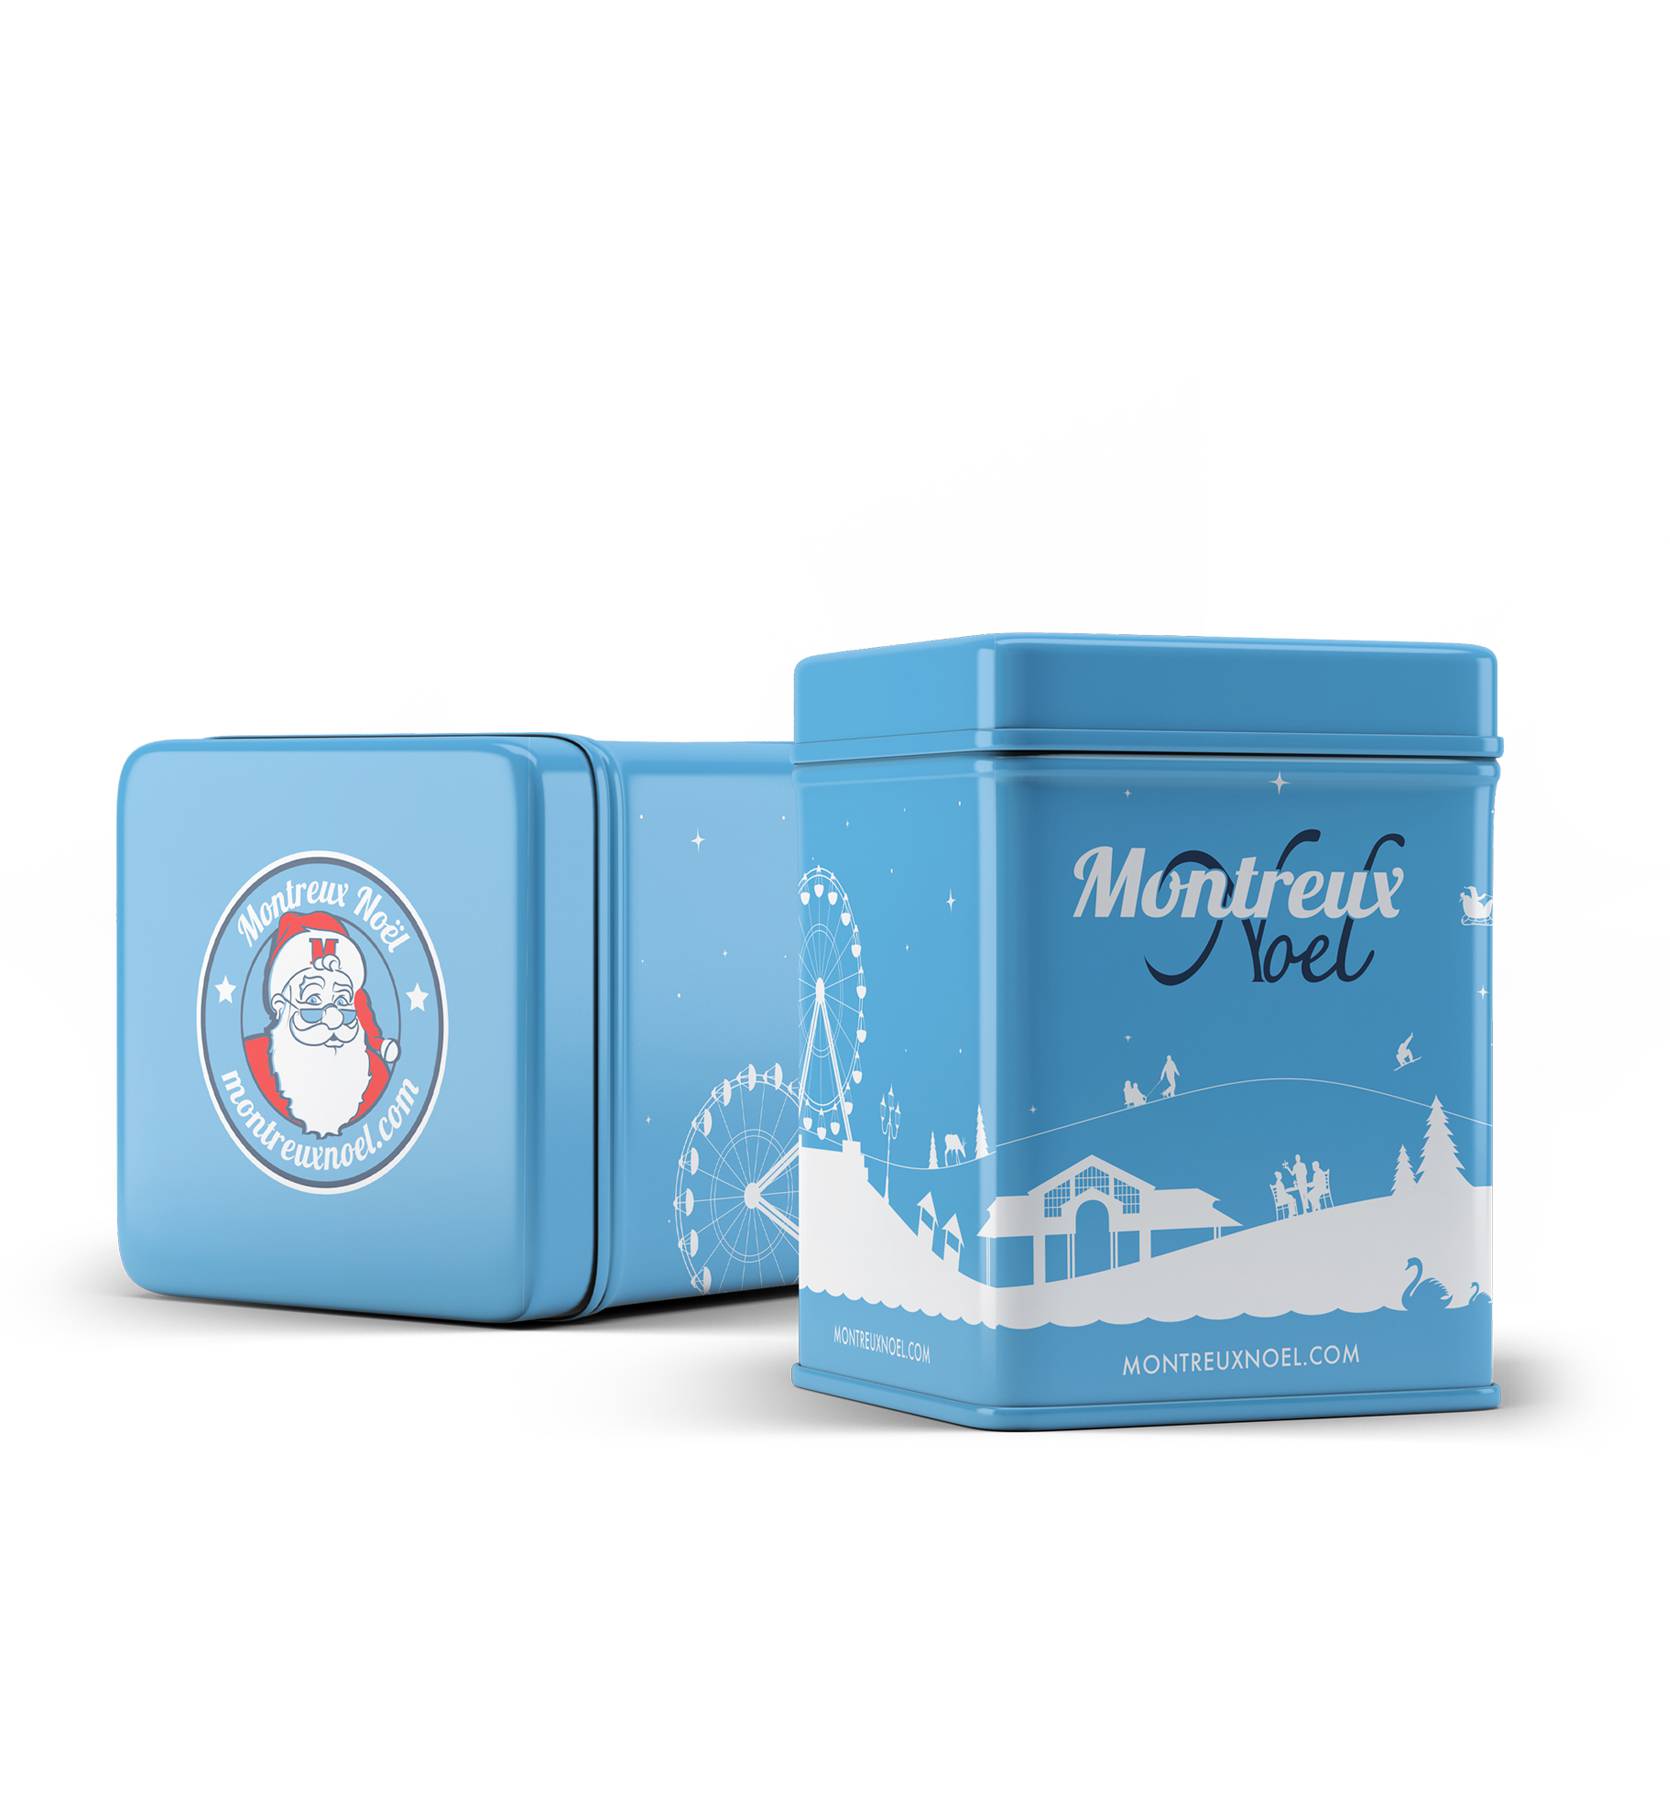 Montreux Noël by L'elixir - Montreux